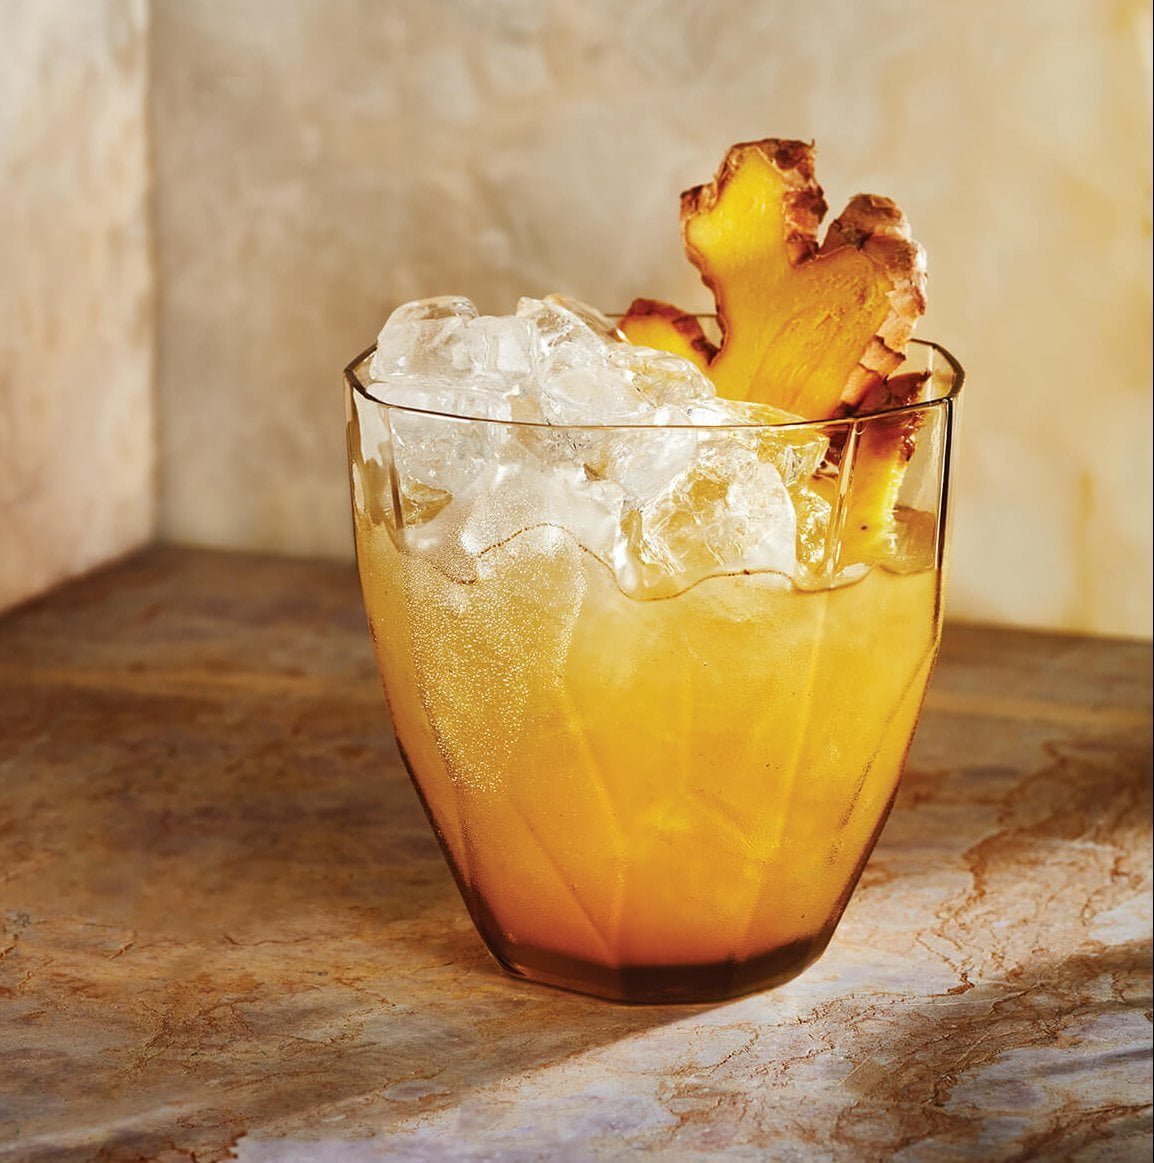 A bright orange drink with ginger garnish